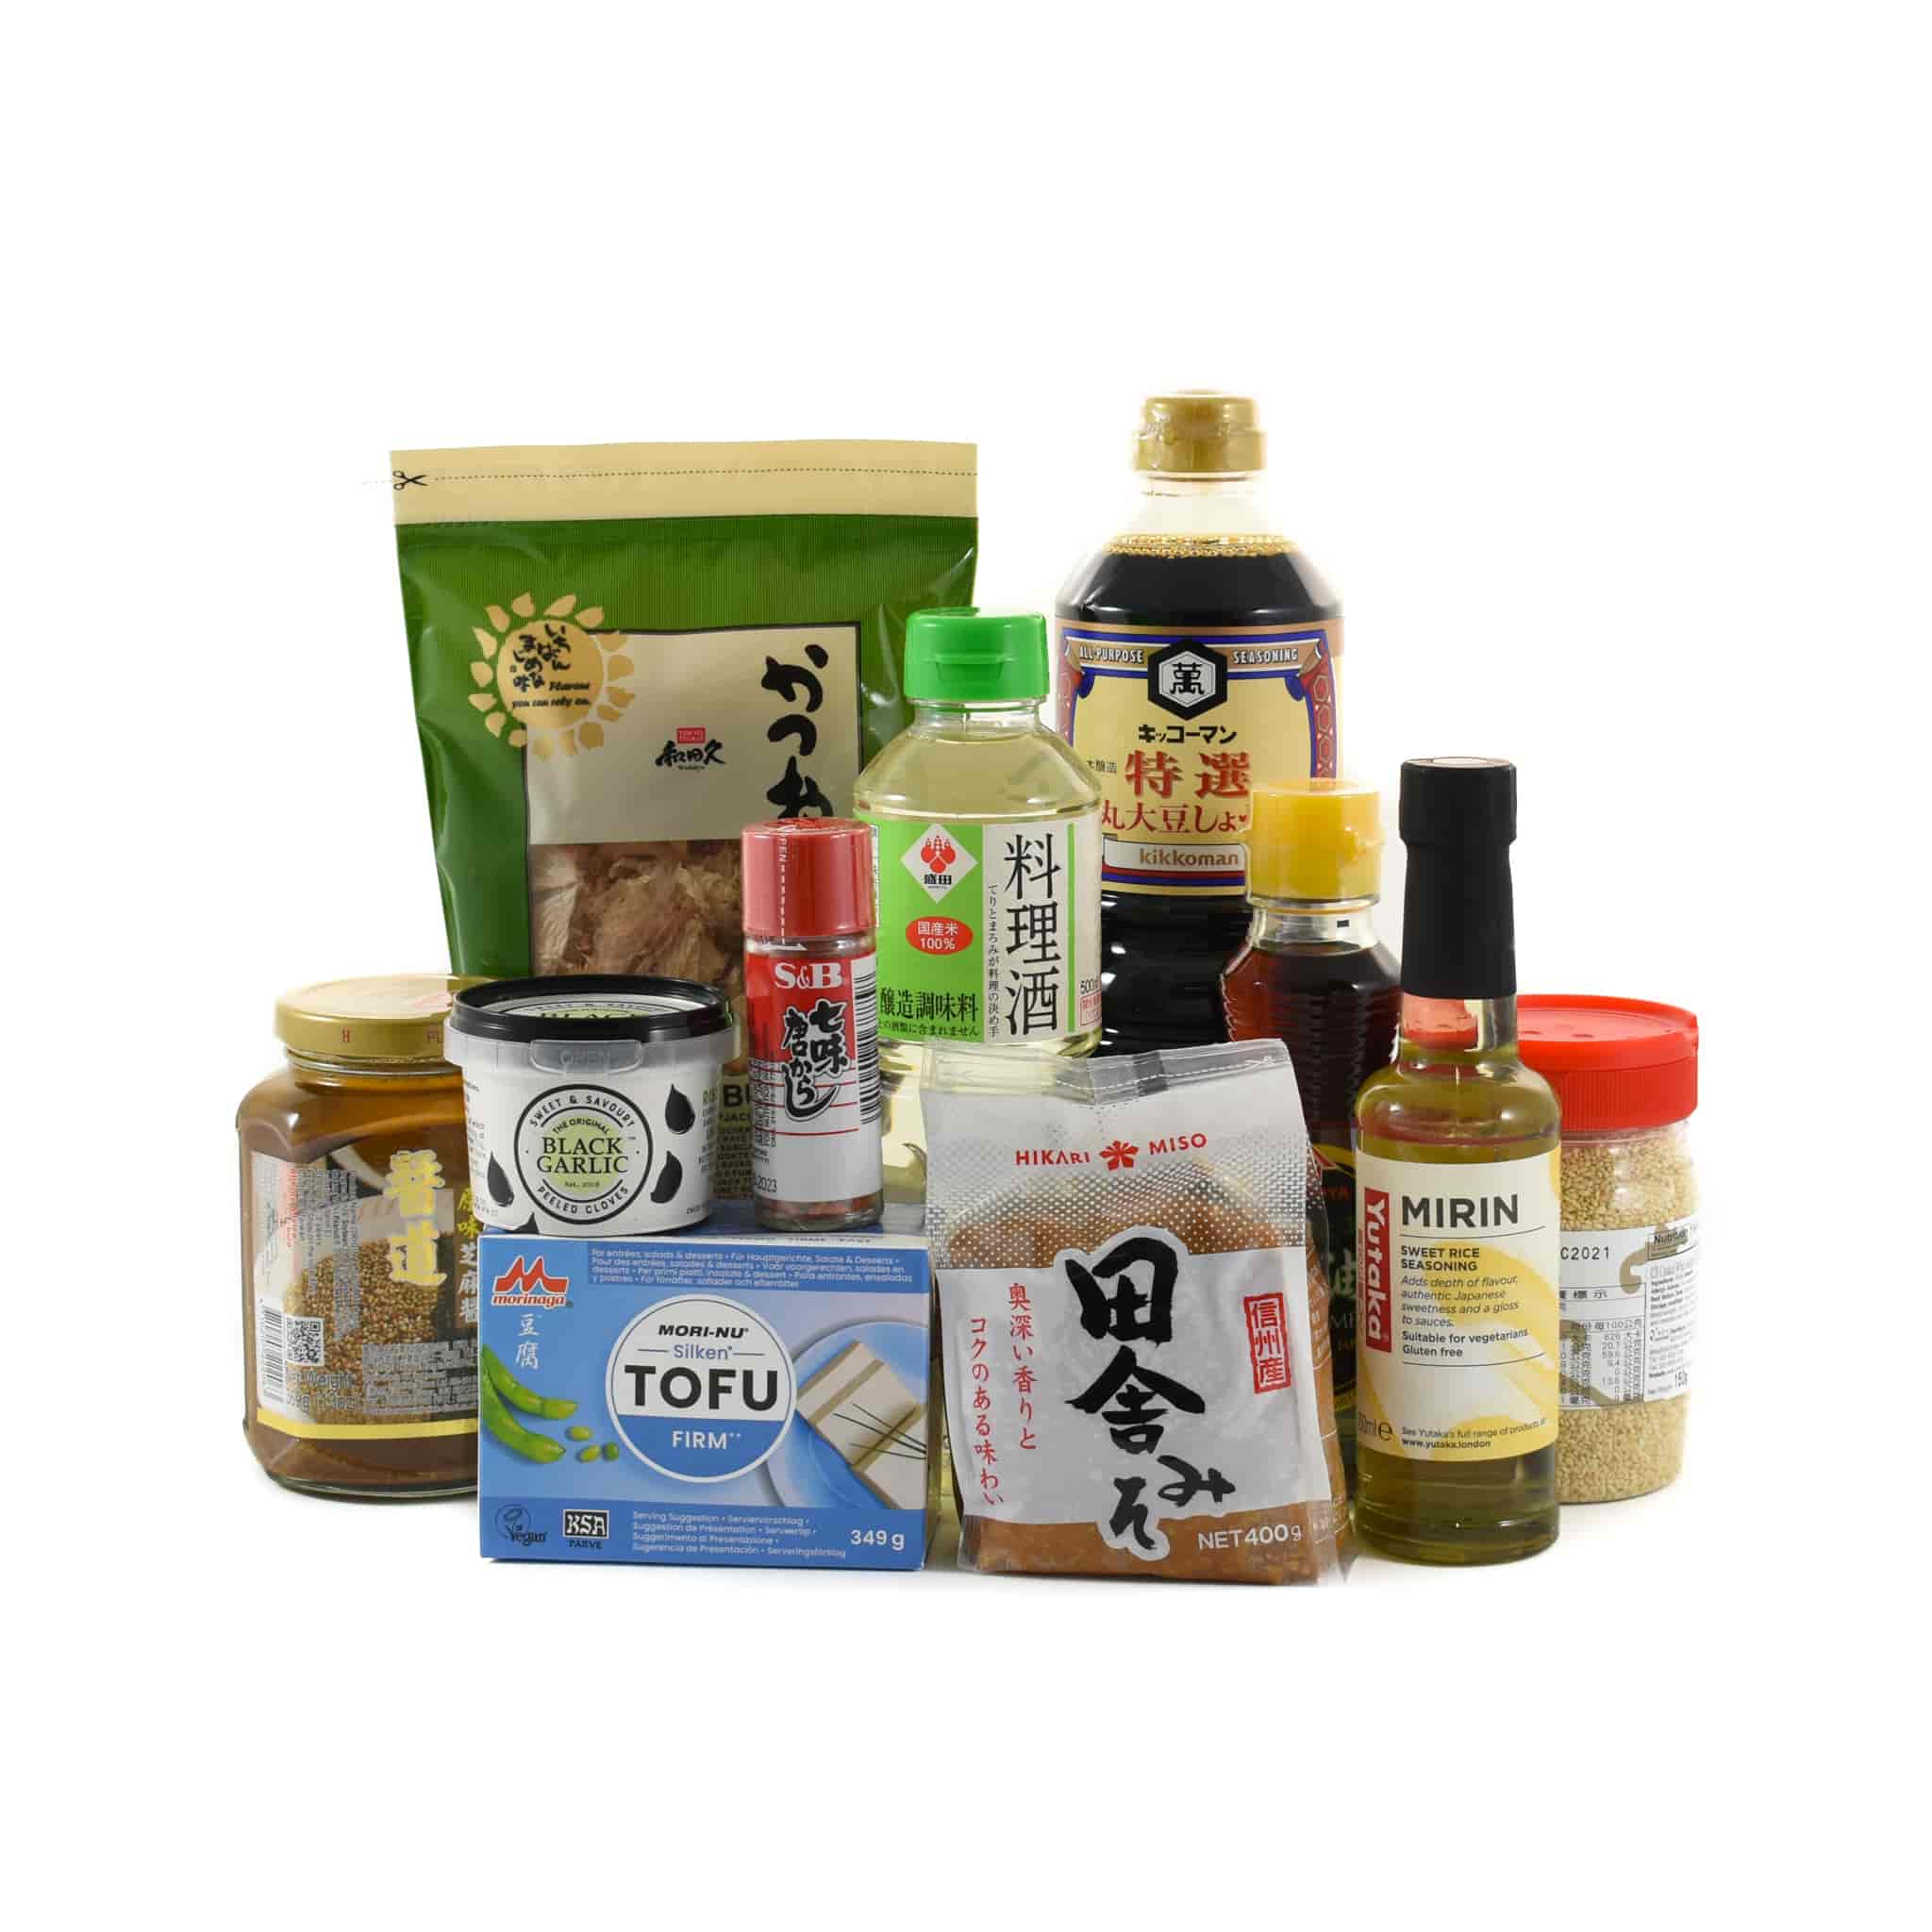 Japanese Ramen Ingredients Set